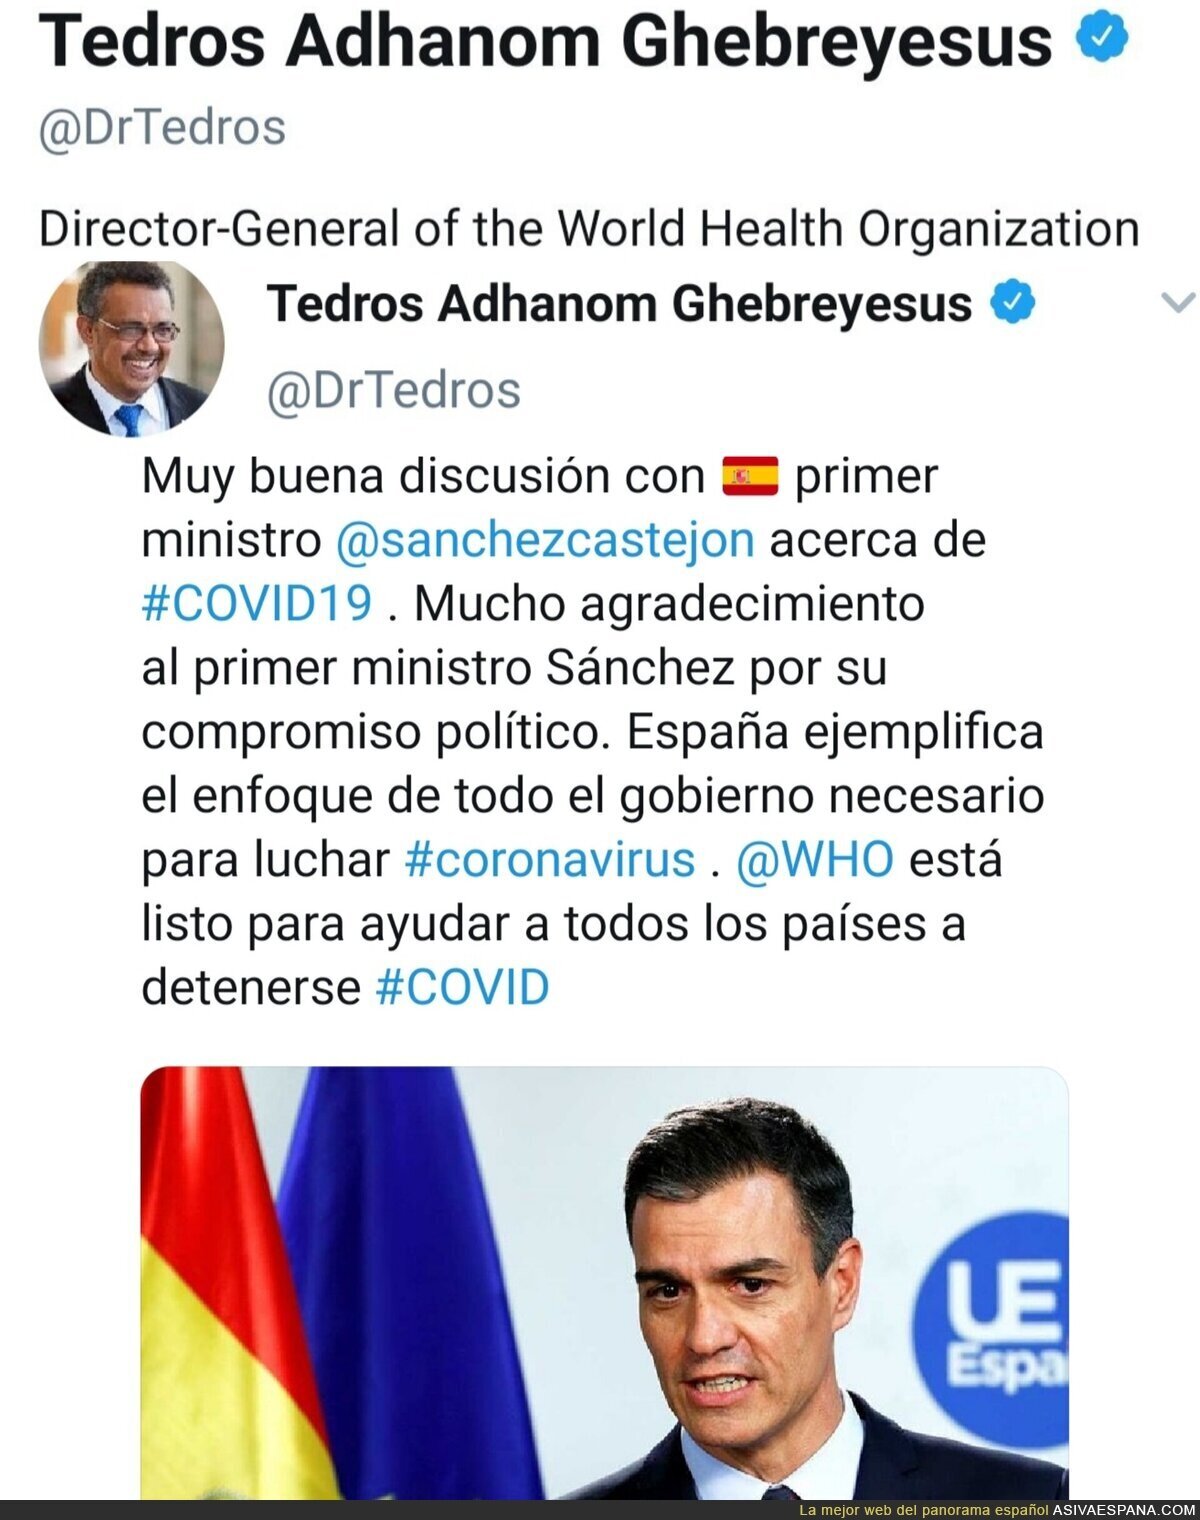 El Director General de la OMS alaba a España y la gestión del gobierno como referencia